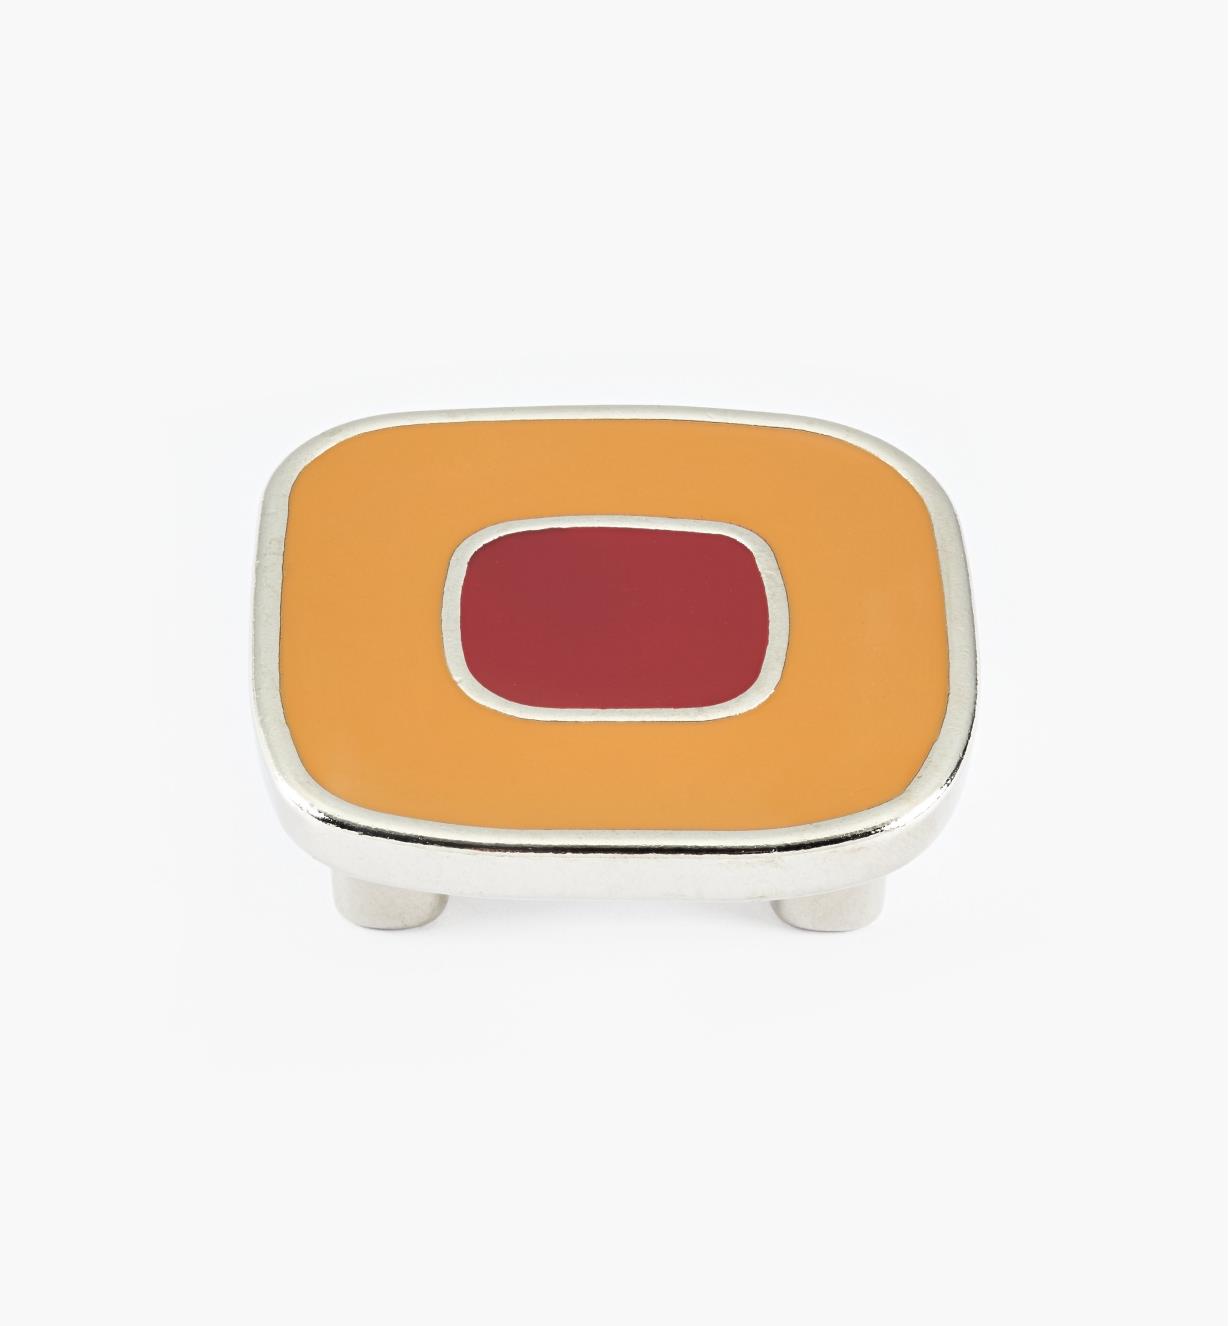 01X4351 - Grand bouton émaillé, orange et rouge, 32 mm x 52 mm